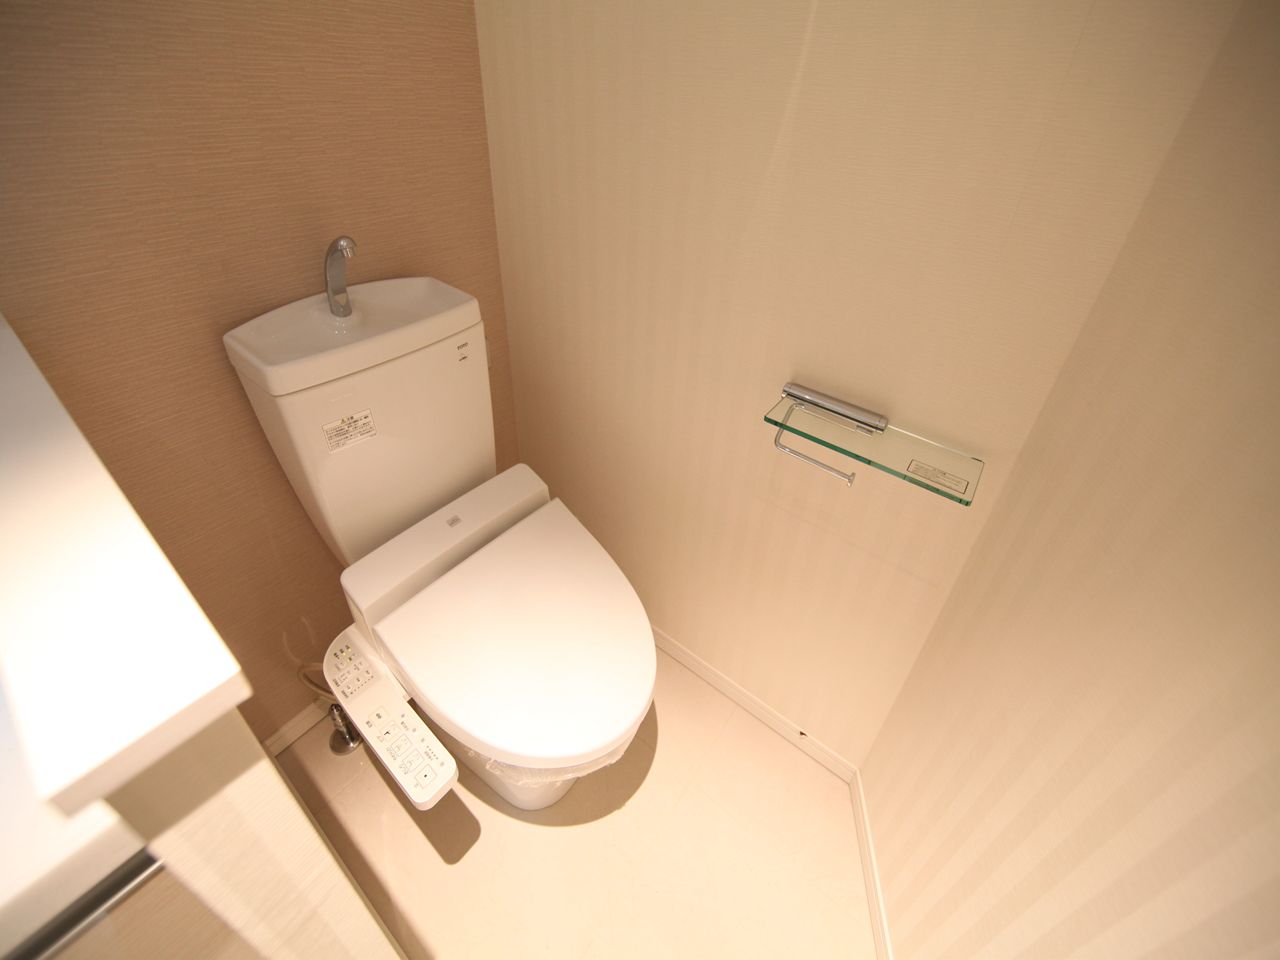 Toilet. Toilet with warm water washing toilet seat